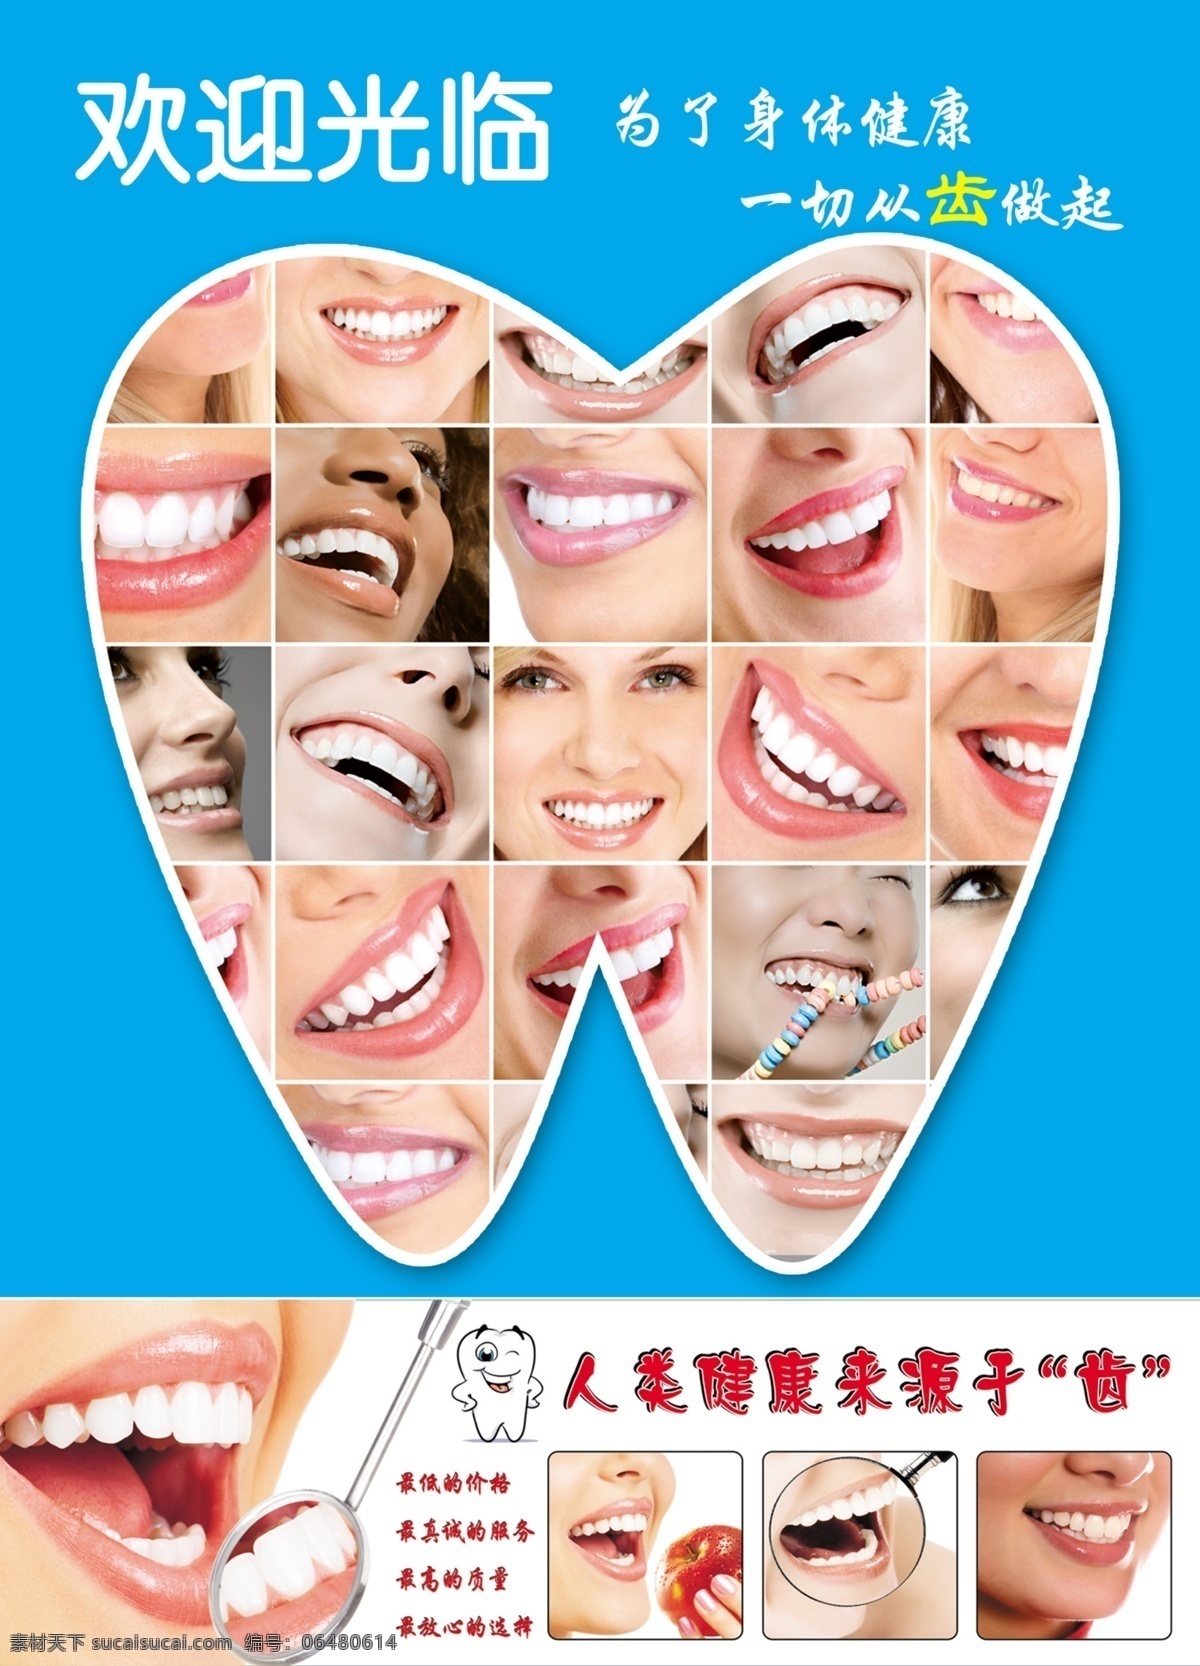 牙齿海报 口腔 牙齿 牙医 牙科 口腔科 爱牙 牙 牙膏 广告设计模板 源文件